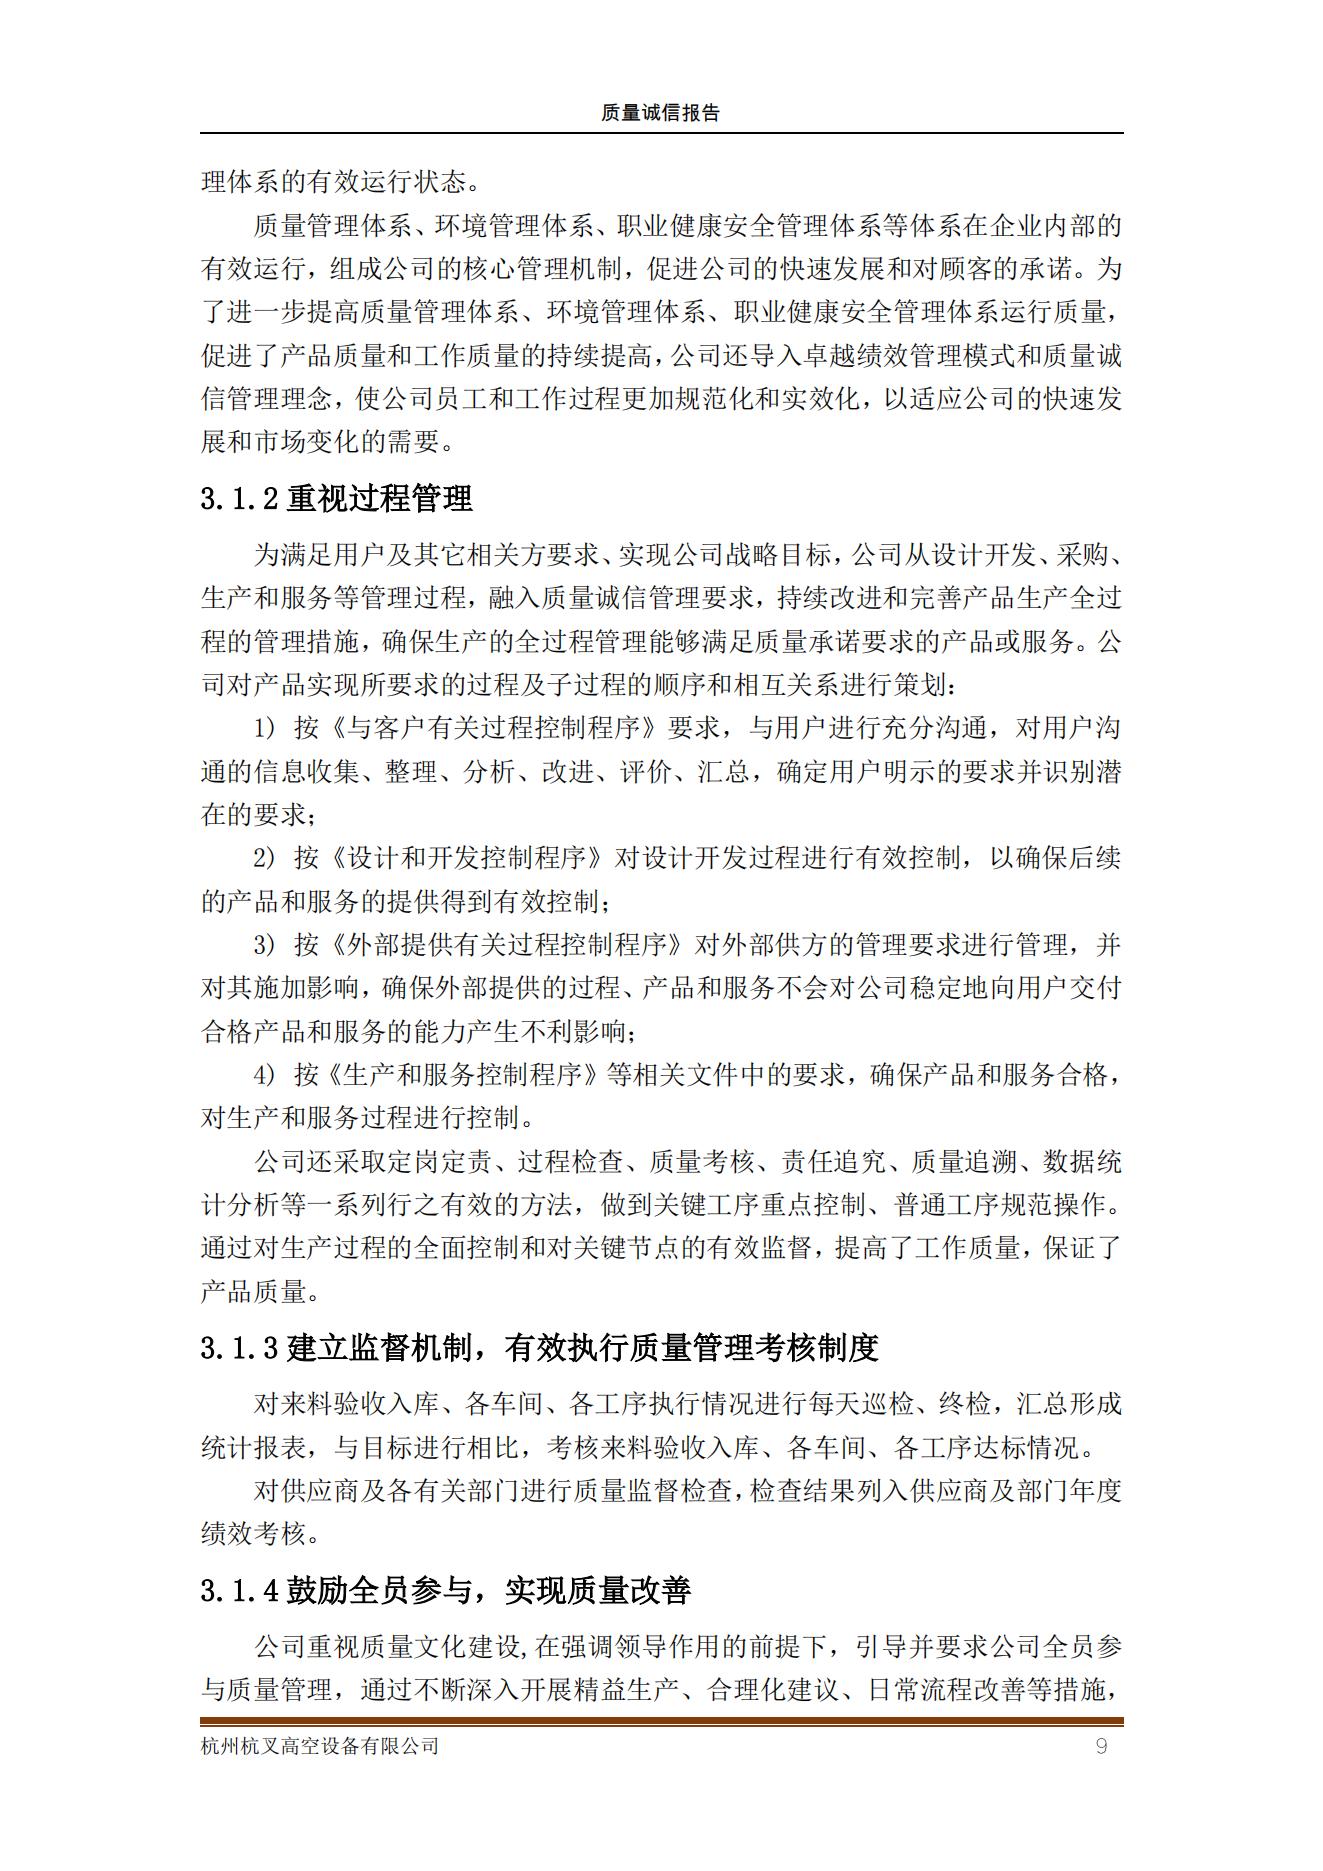 杭州杭叉高空设备公司2021年质量诚信报告(图9)